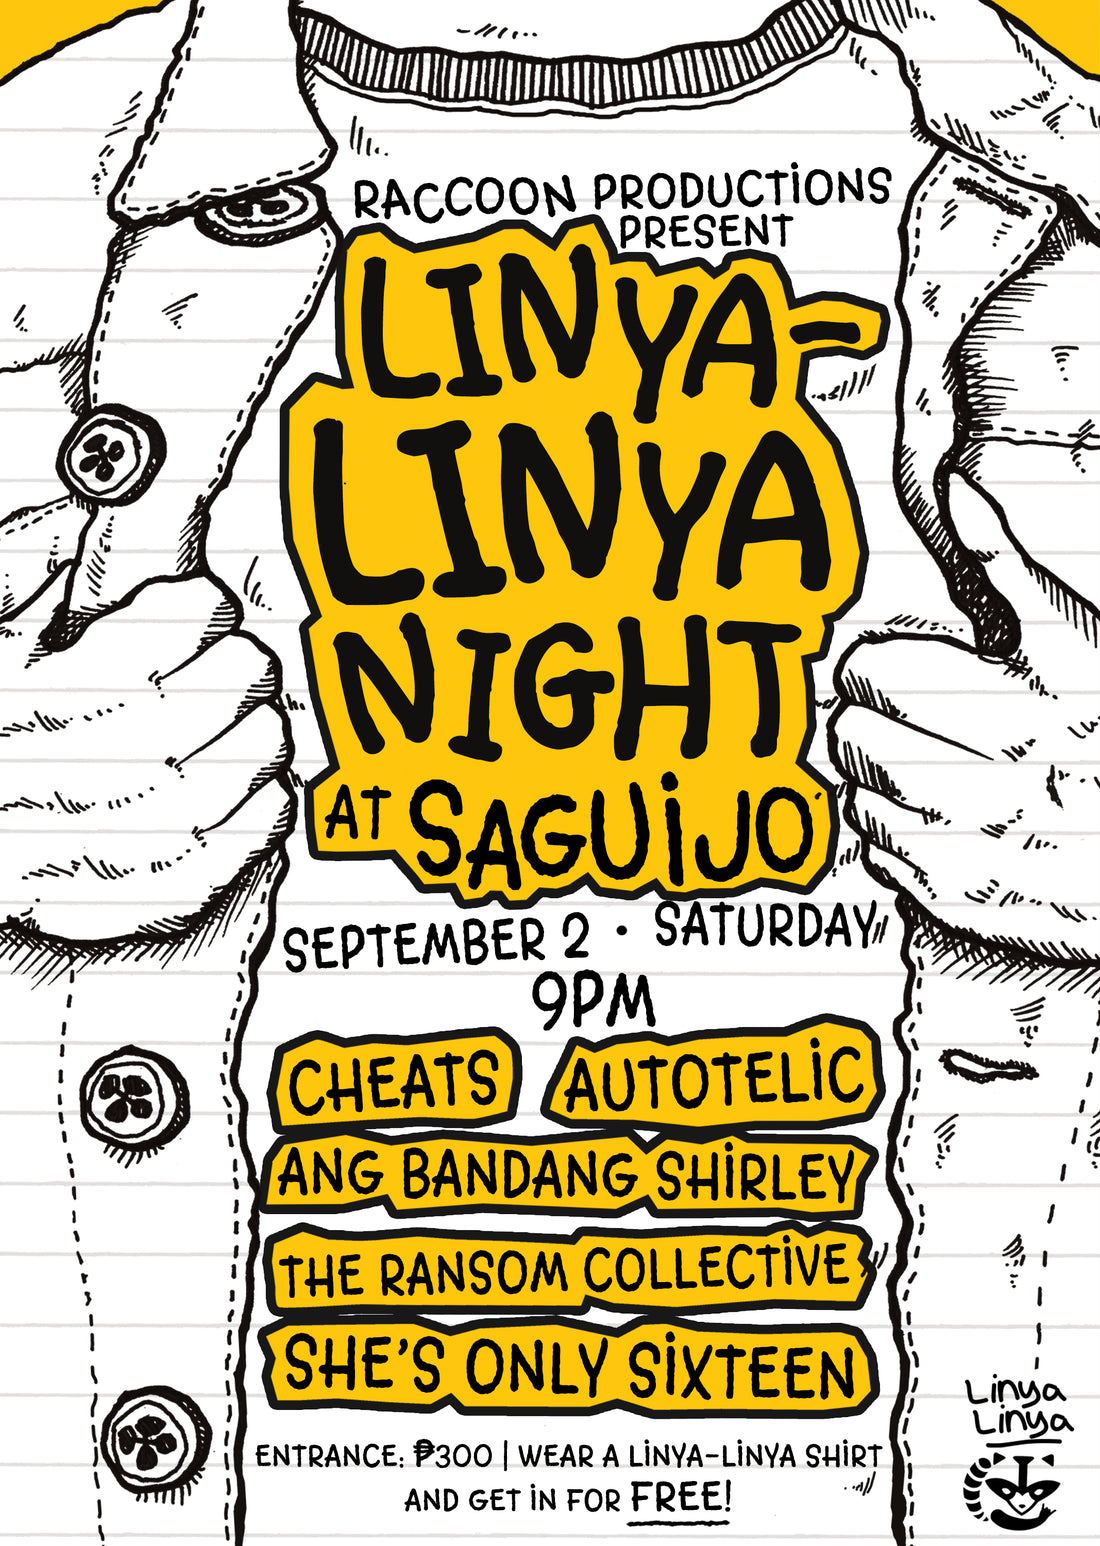 Linya-Linya Night at Saguijo!